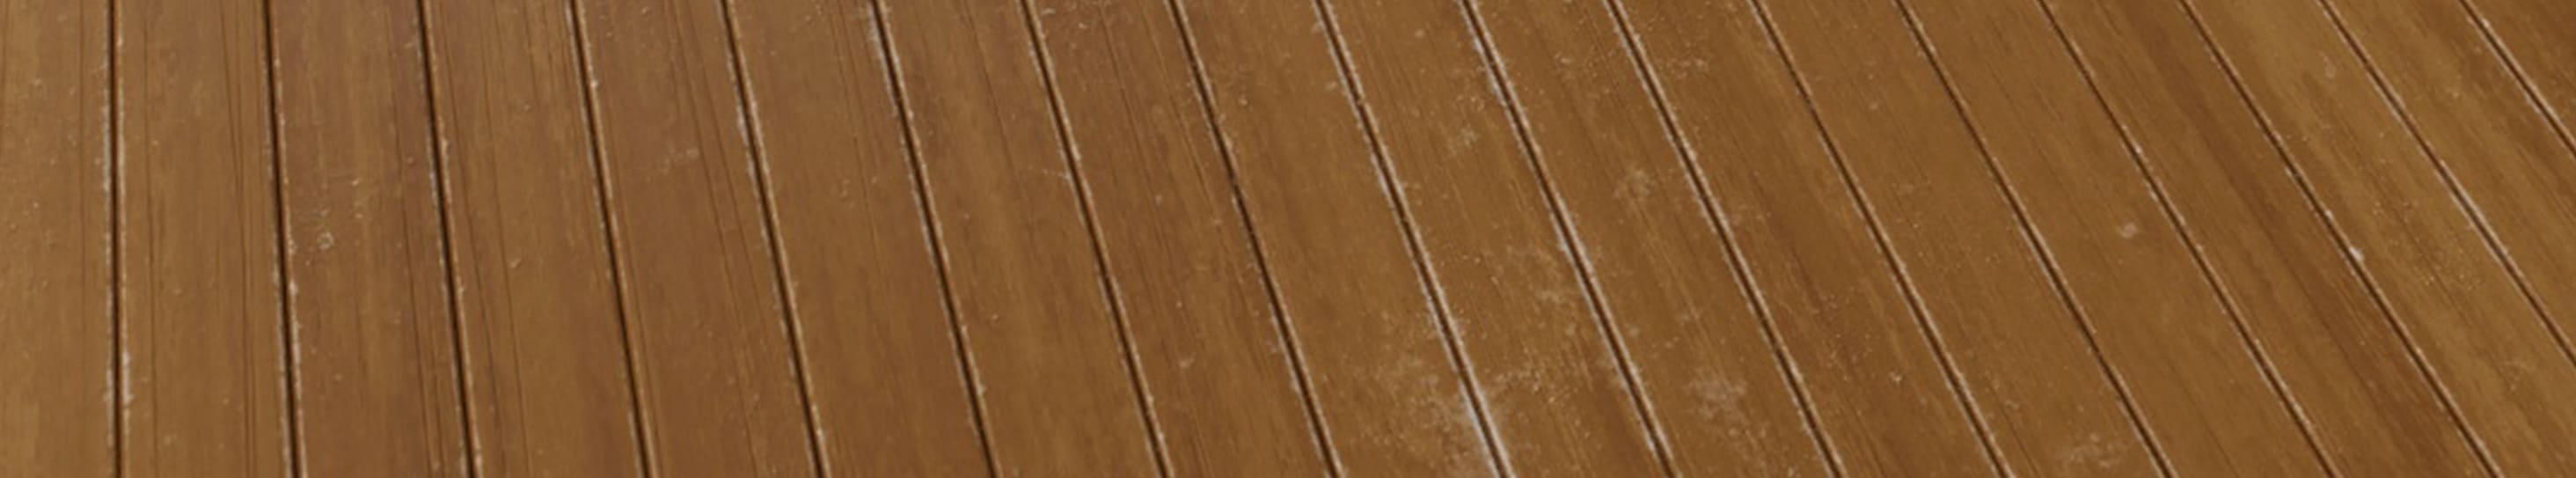 1K, 2K, 4K, 8K, 16K Plank Wood Texture